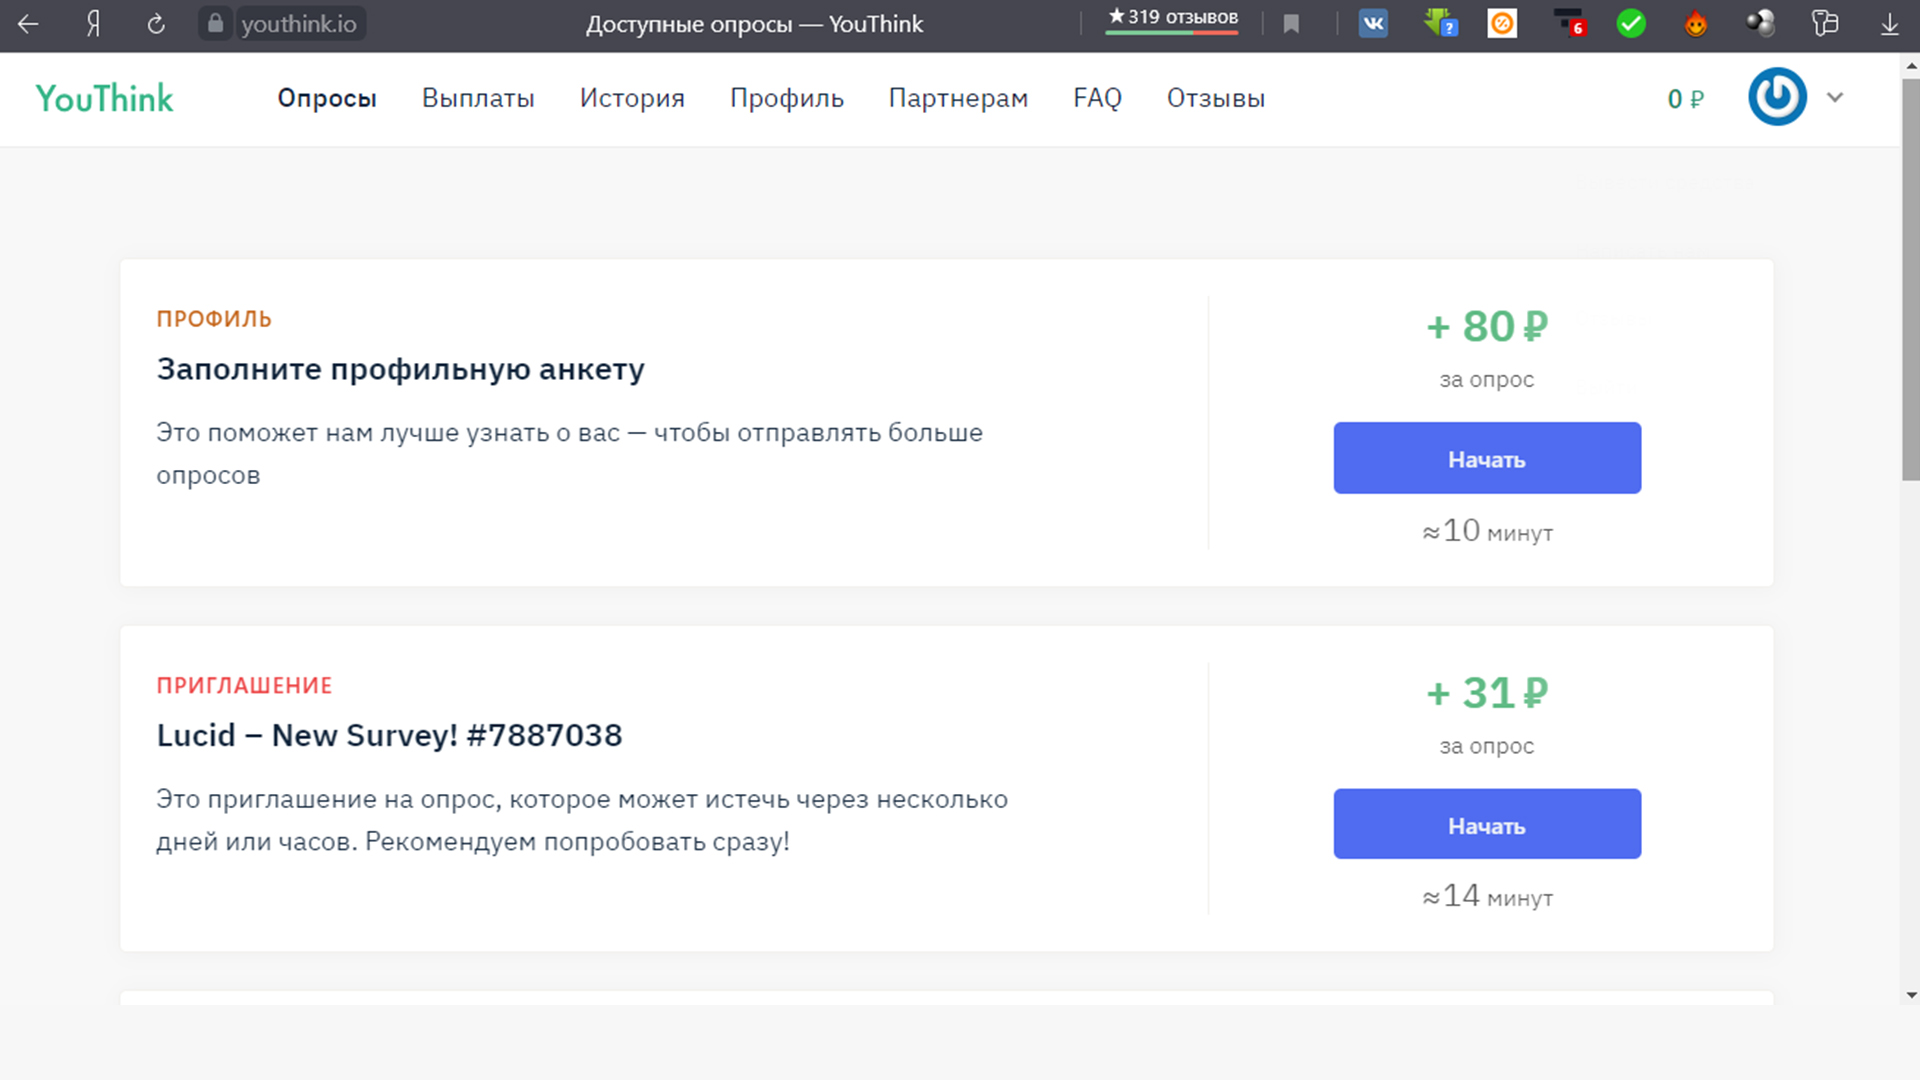 За заполнение профильной анкеты на Юфинк вам заплатят 80 рублей.